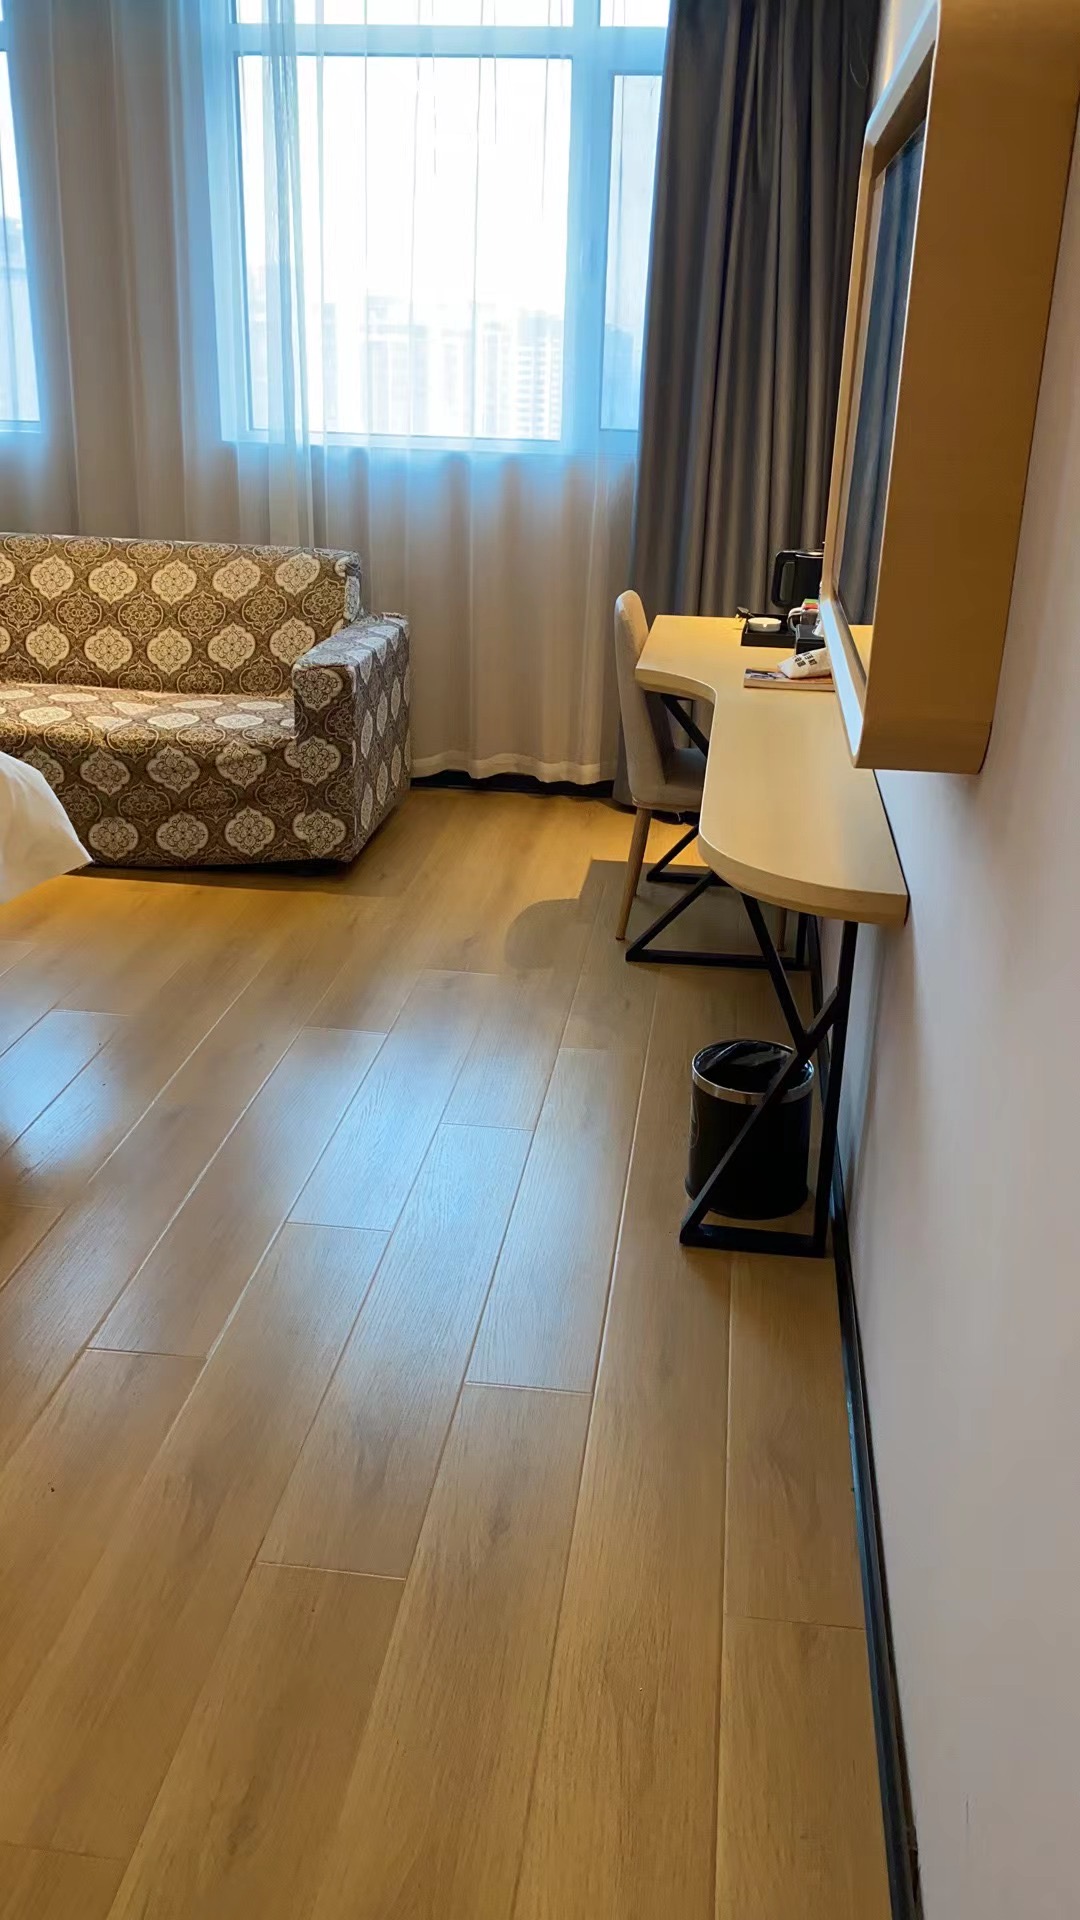 酒店环境舒适，房间卫生干净整洁、服务方面恰到好处，尤其是酒店员工热情友善，让人心情愉悦。